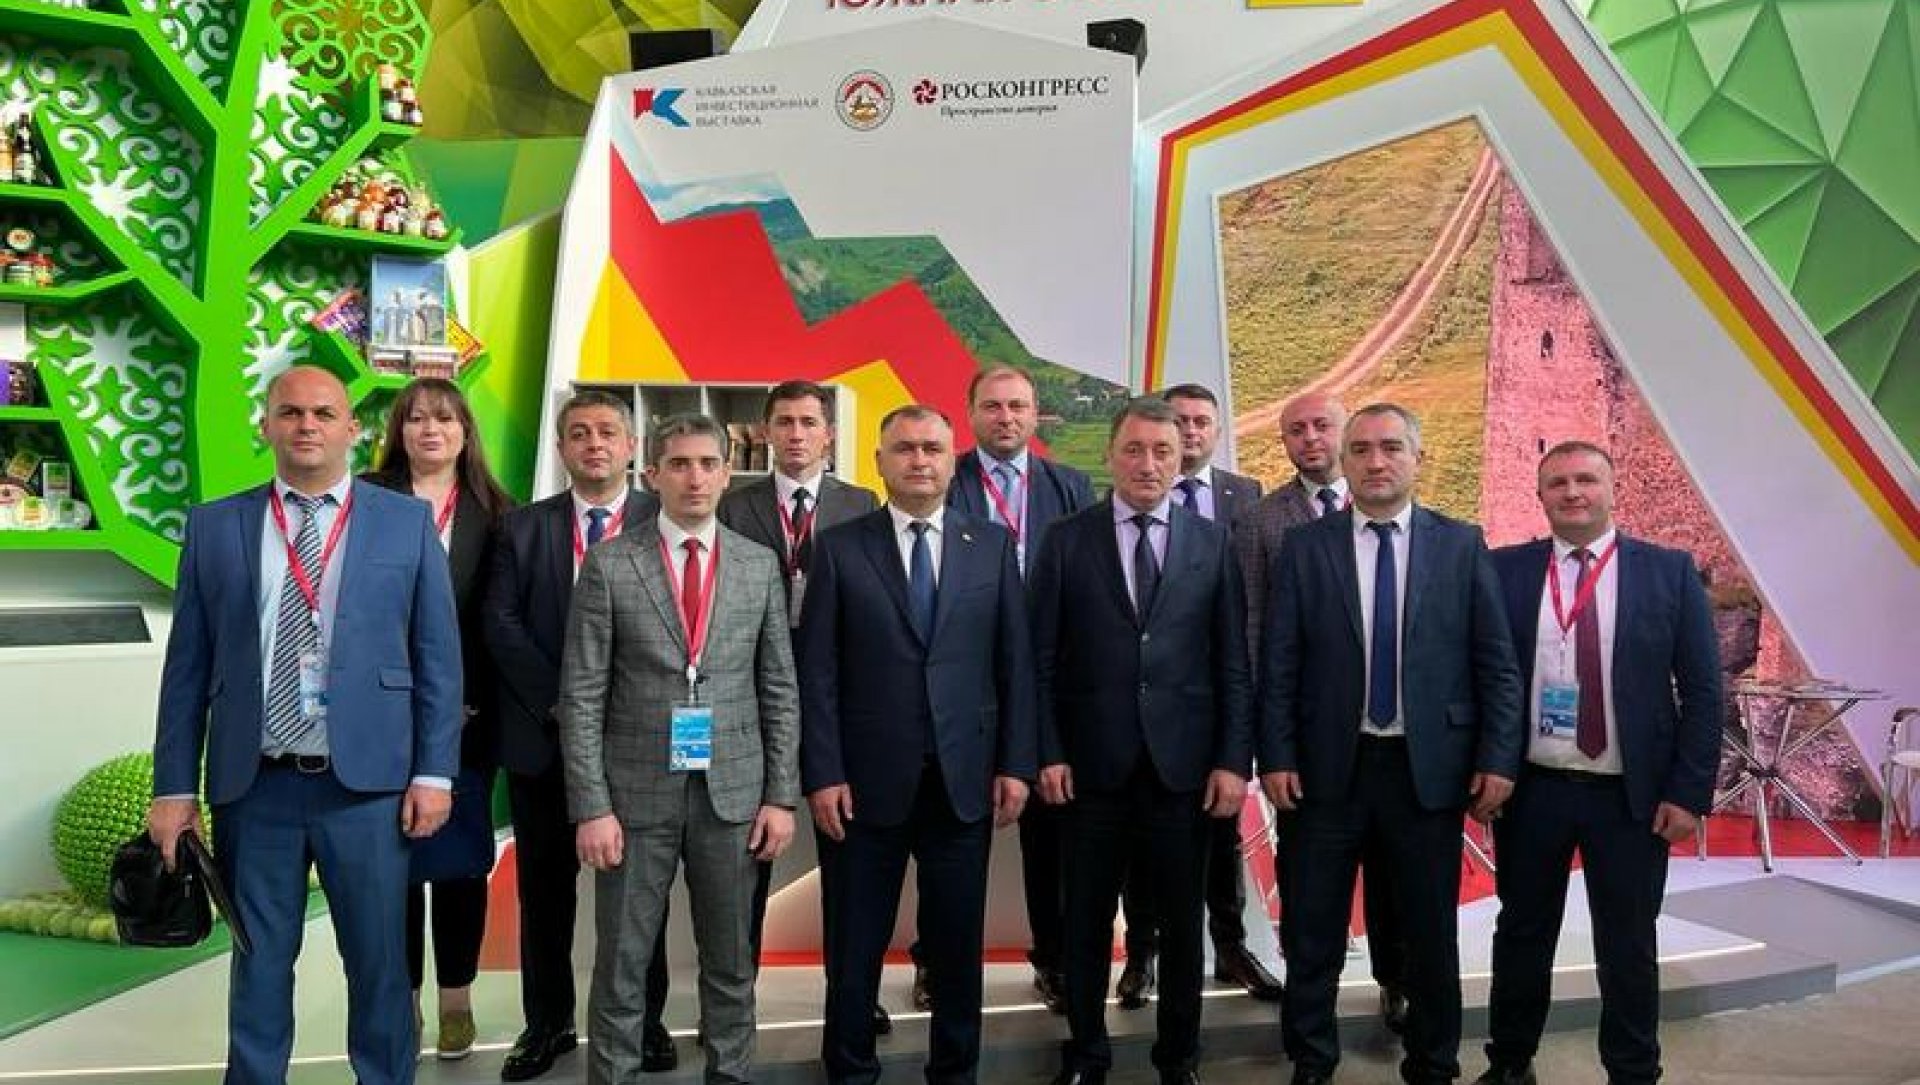 Дзамболат Тадтаев: «Мы ставили задачу – как можно полнее раскрыть инвестиционный и туристический потенциал Южной Осетии, найти новые пути сотрудничества»